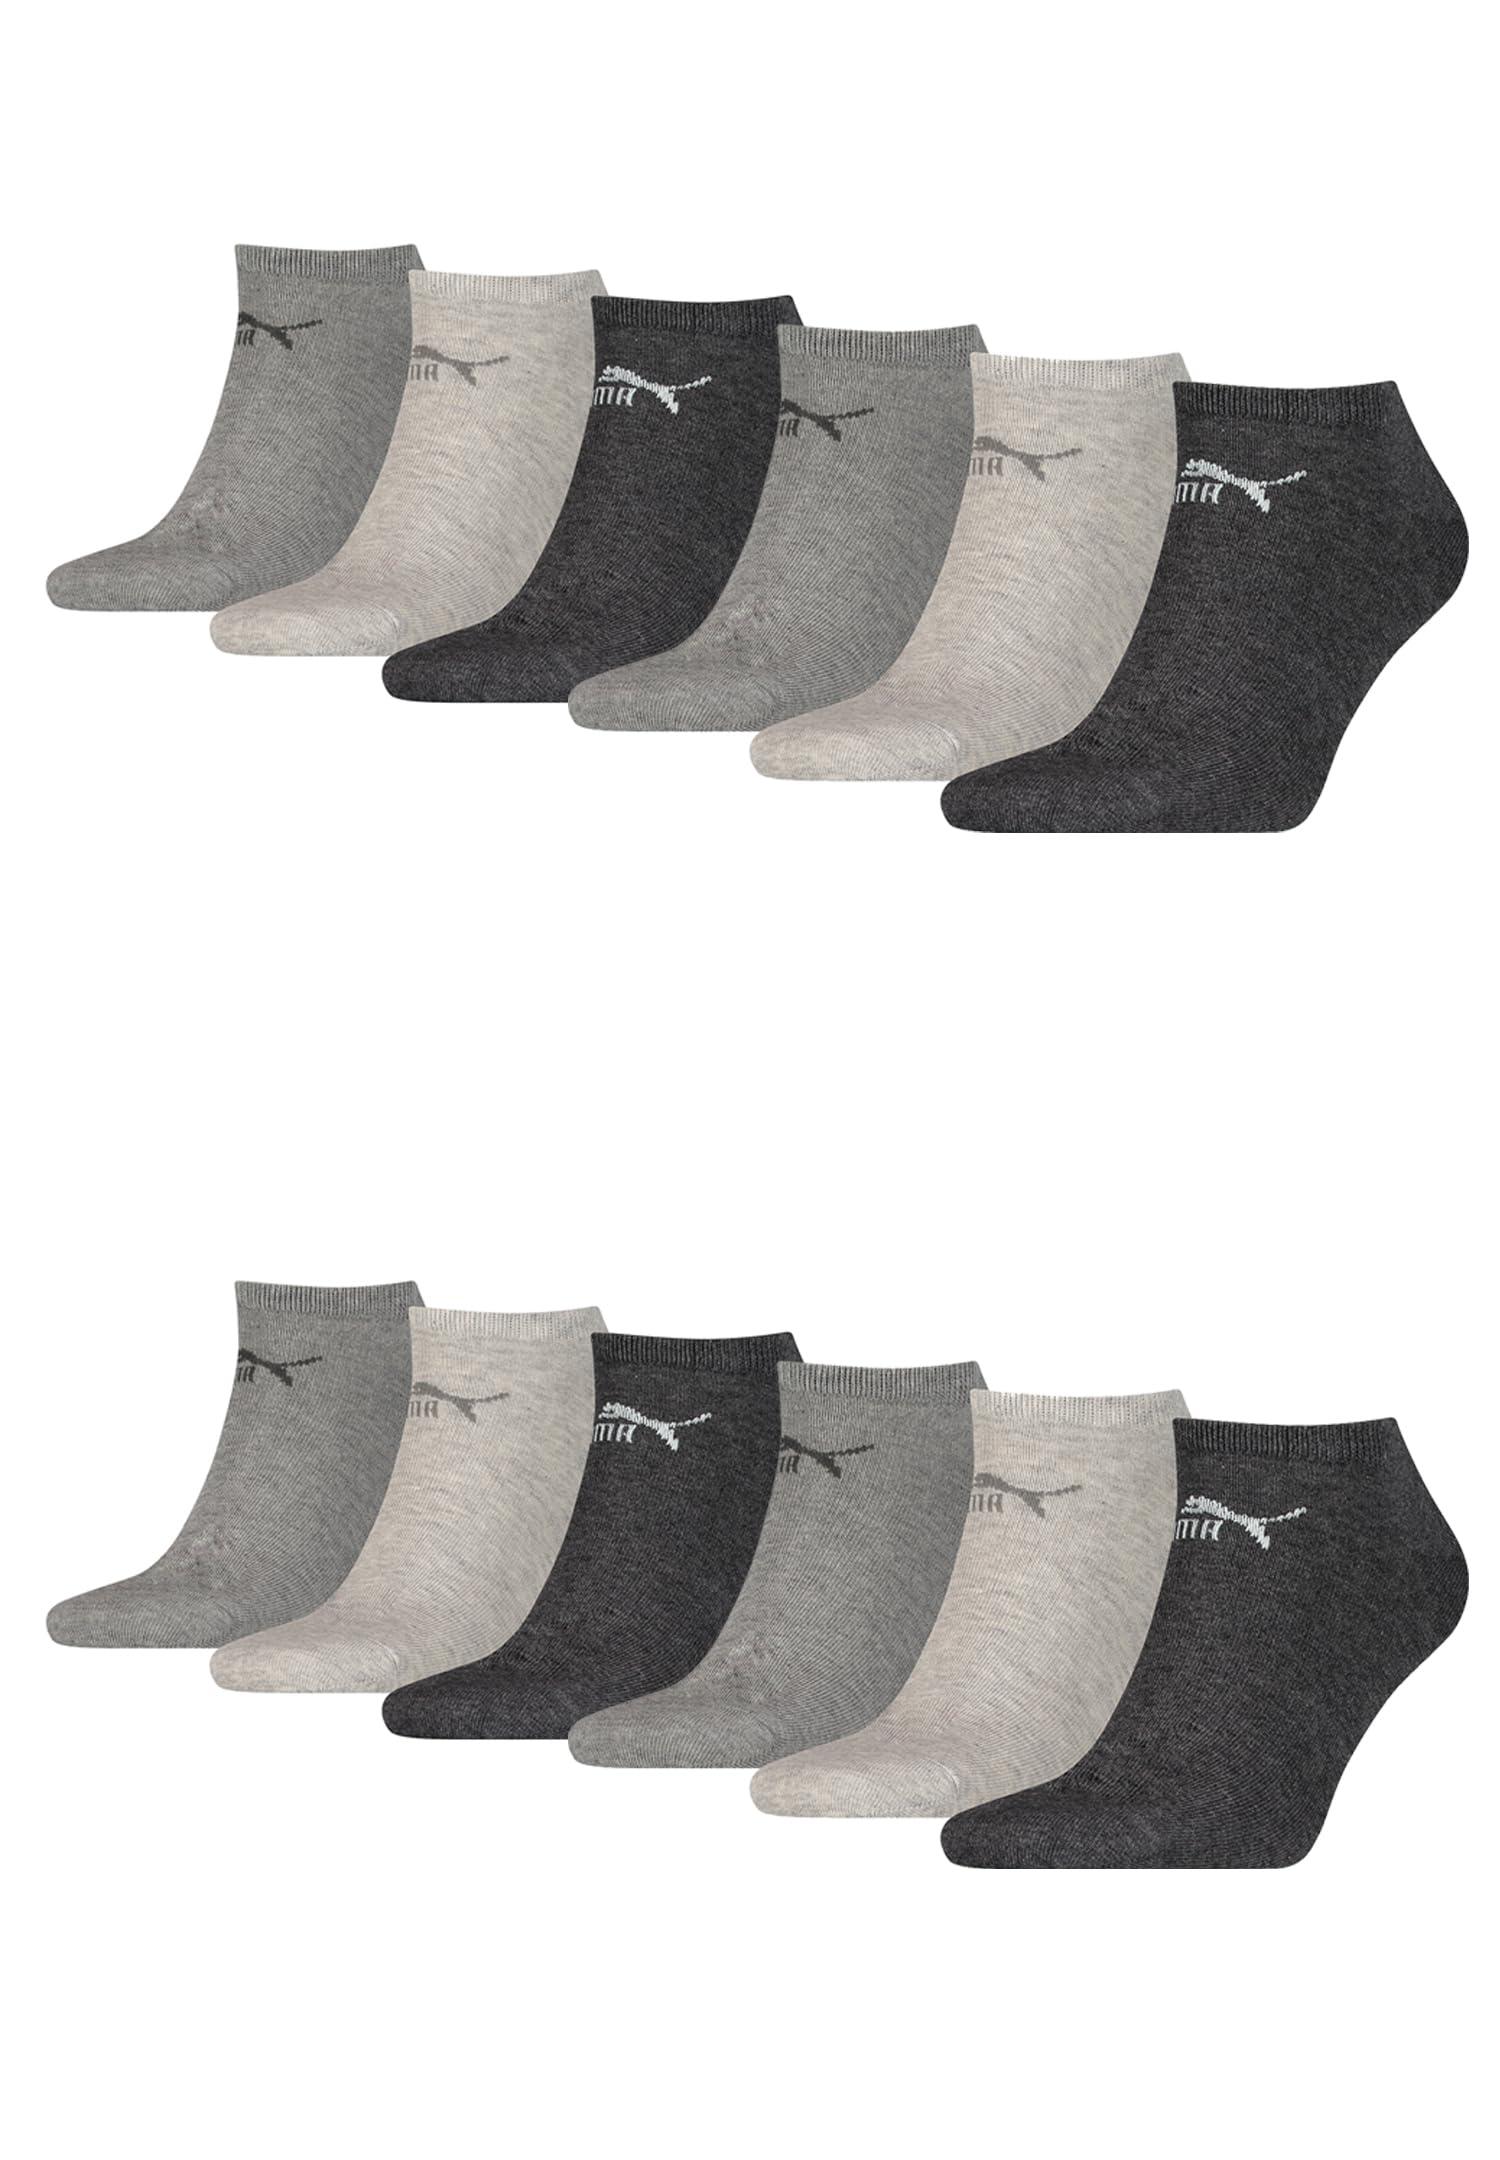 Clyde Lot de 12 paires de chaussettes de sport unisexes pour homme et femme  35-38 39-42 43-46 47-49 Noir/blanc/gris/bleu PUMA en coloris Gris